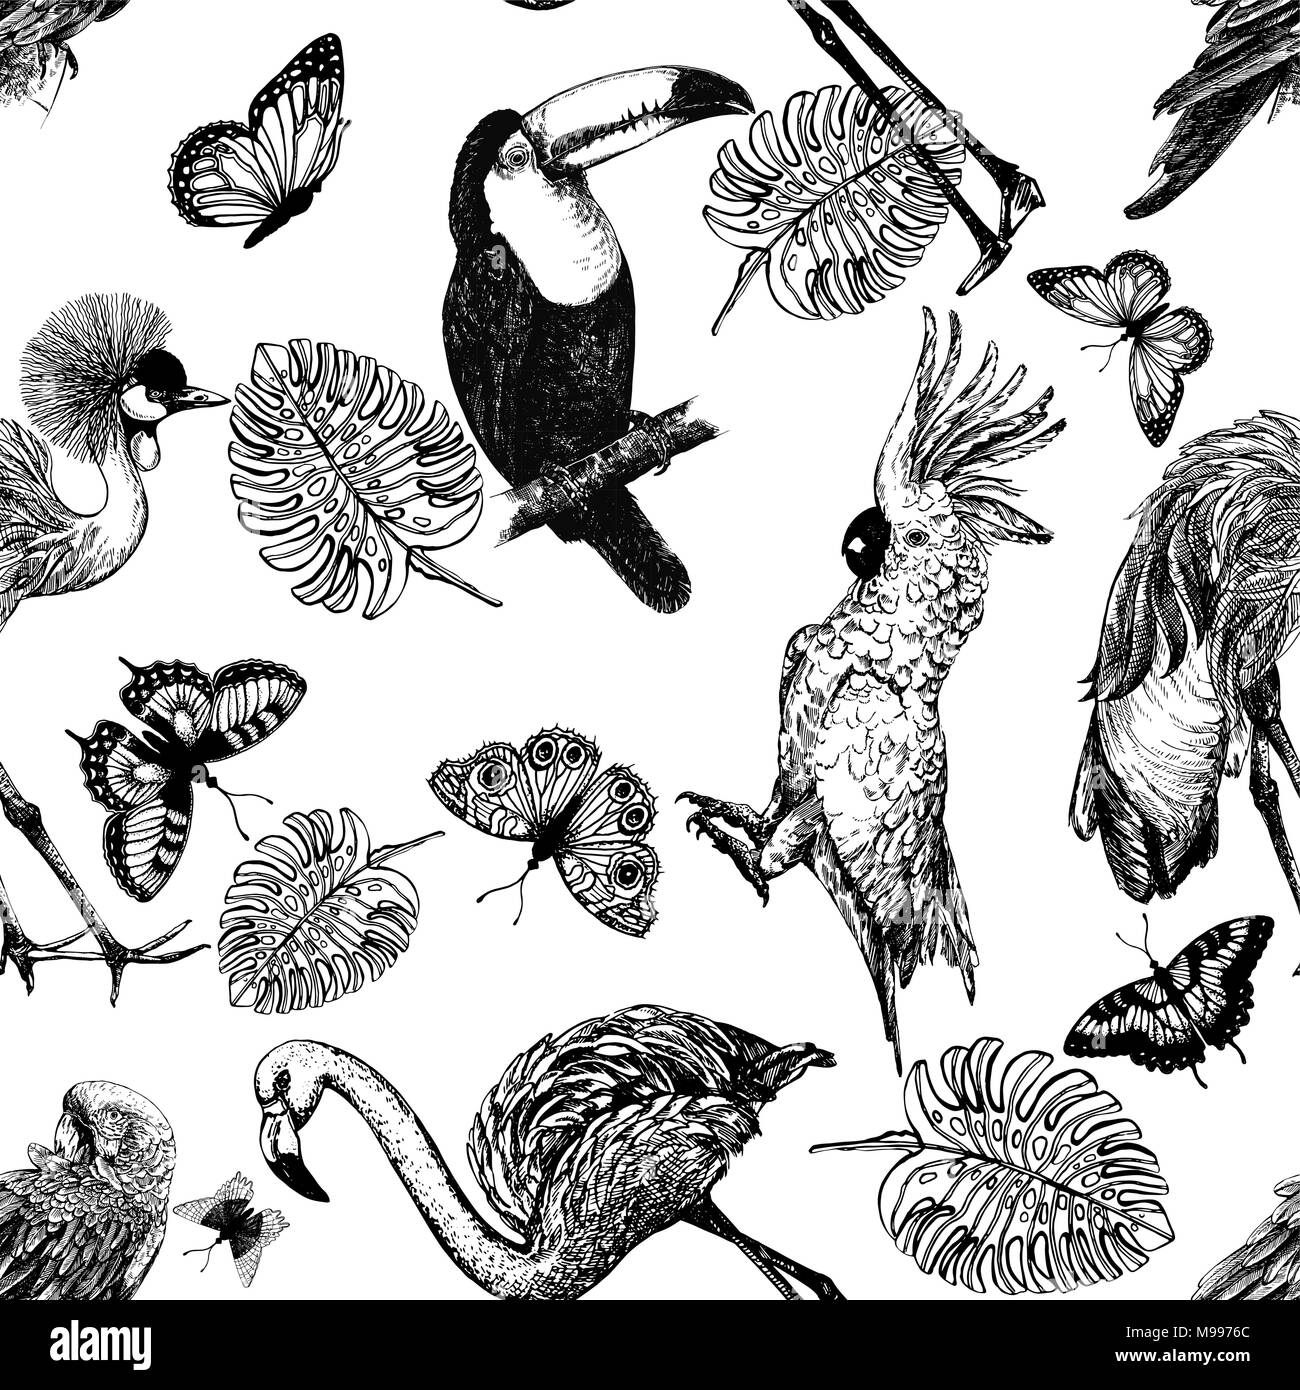 Nahtlose Muster von Hand gezeichnete Skizze Stil exotische Vögel, Pflanzen und Schmetterlinge auf weißem Hintergrund. Vector Illustration. Stock Vektor